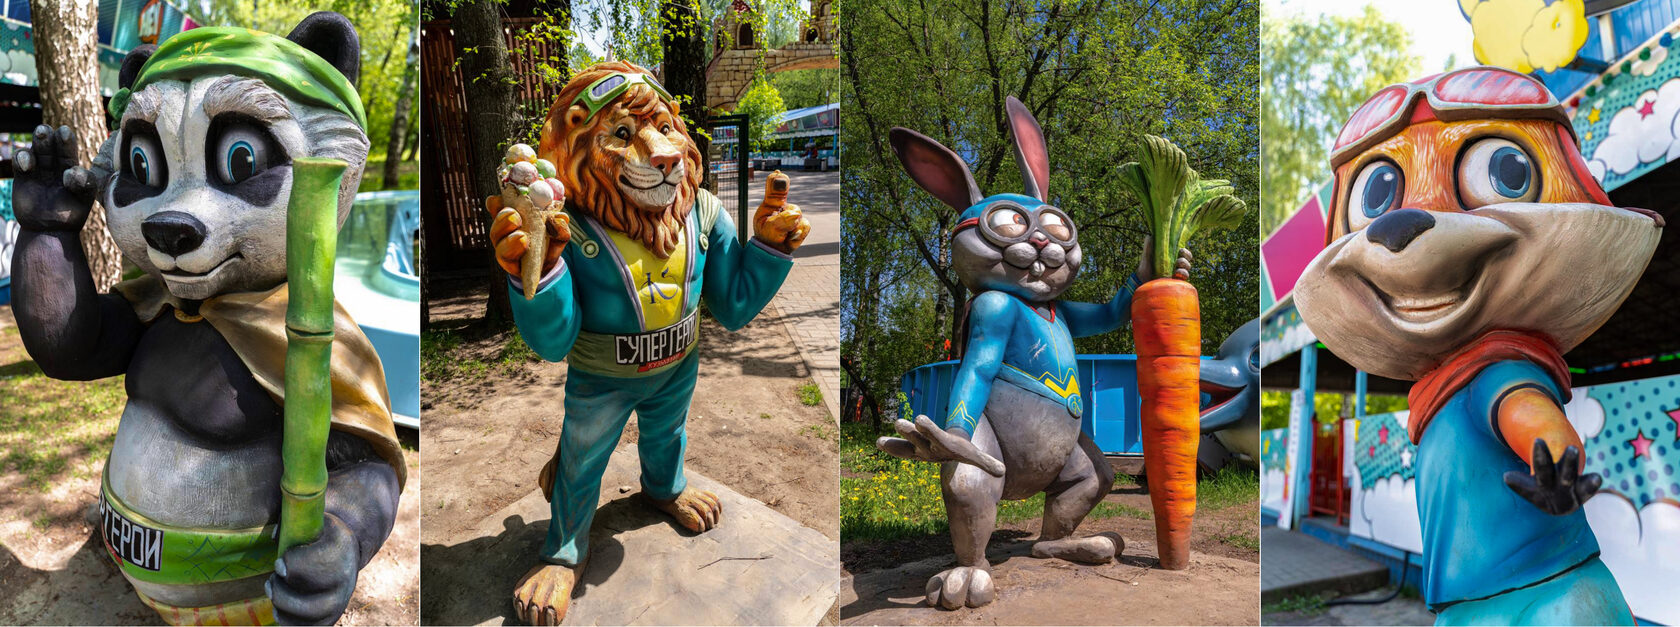 Скульптуры персонажей для детей в парке 